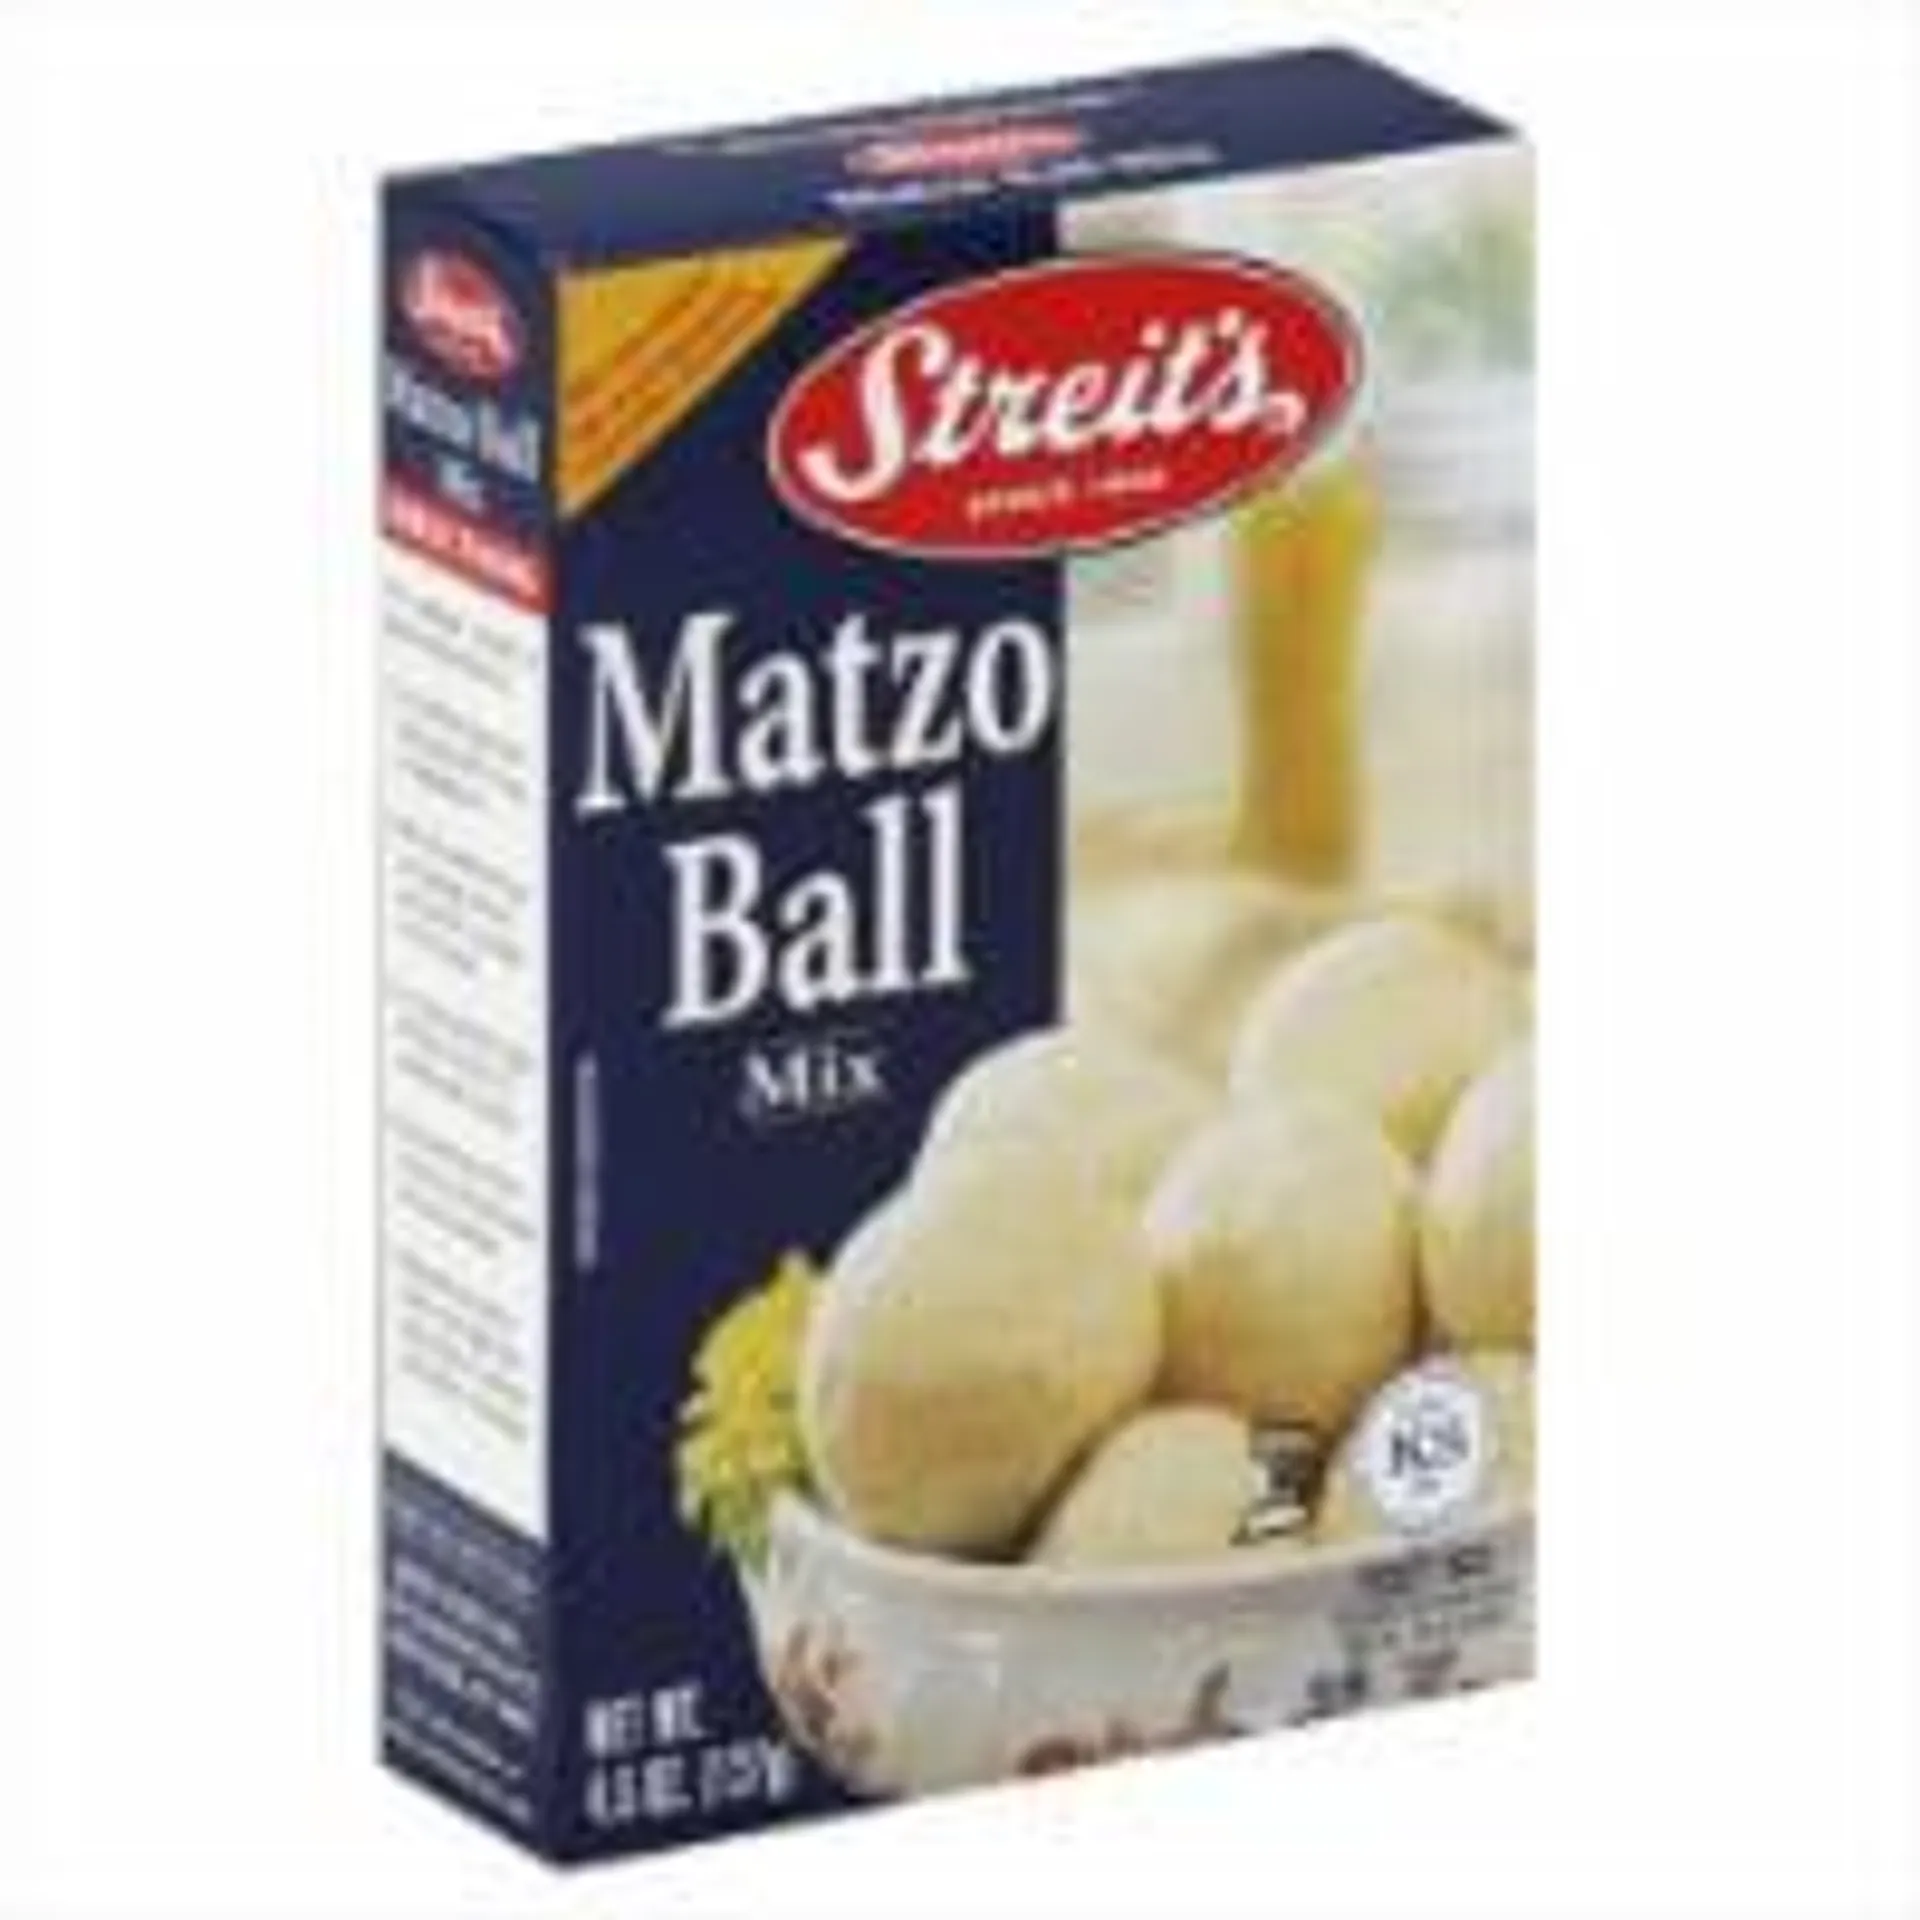 MIX MATZO BALL-4.5 OZ -Pack of 12